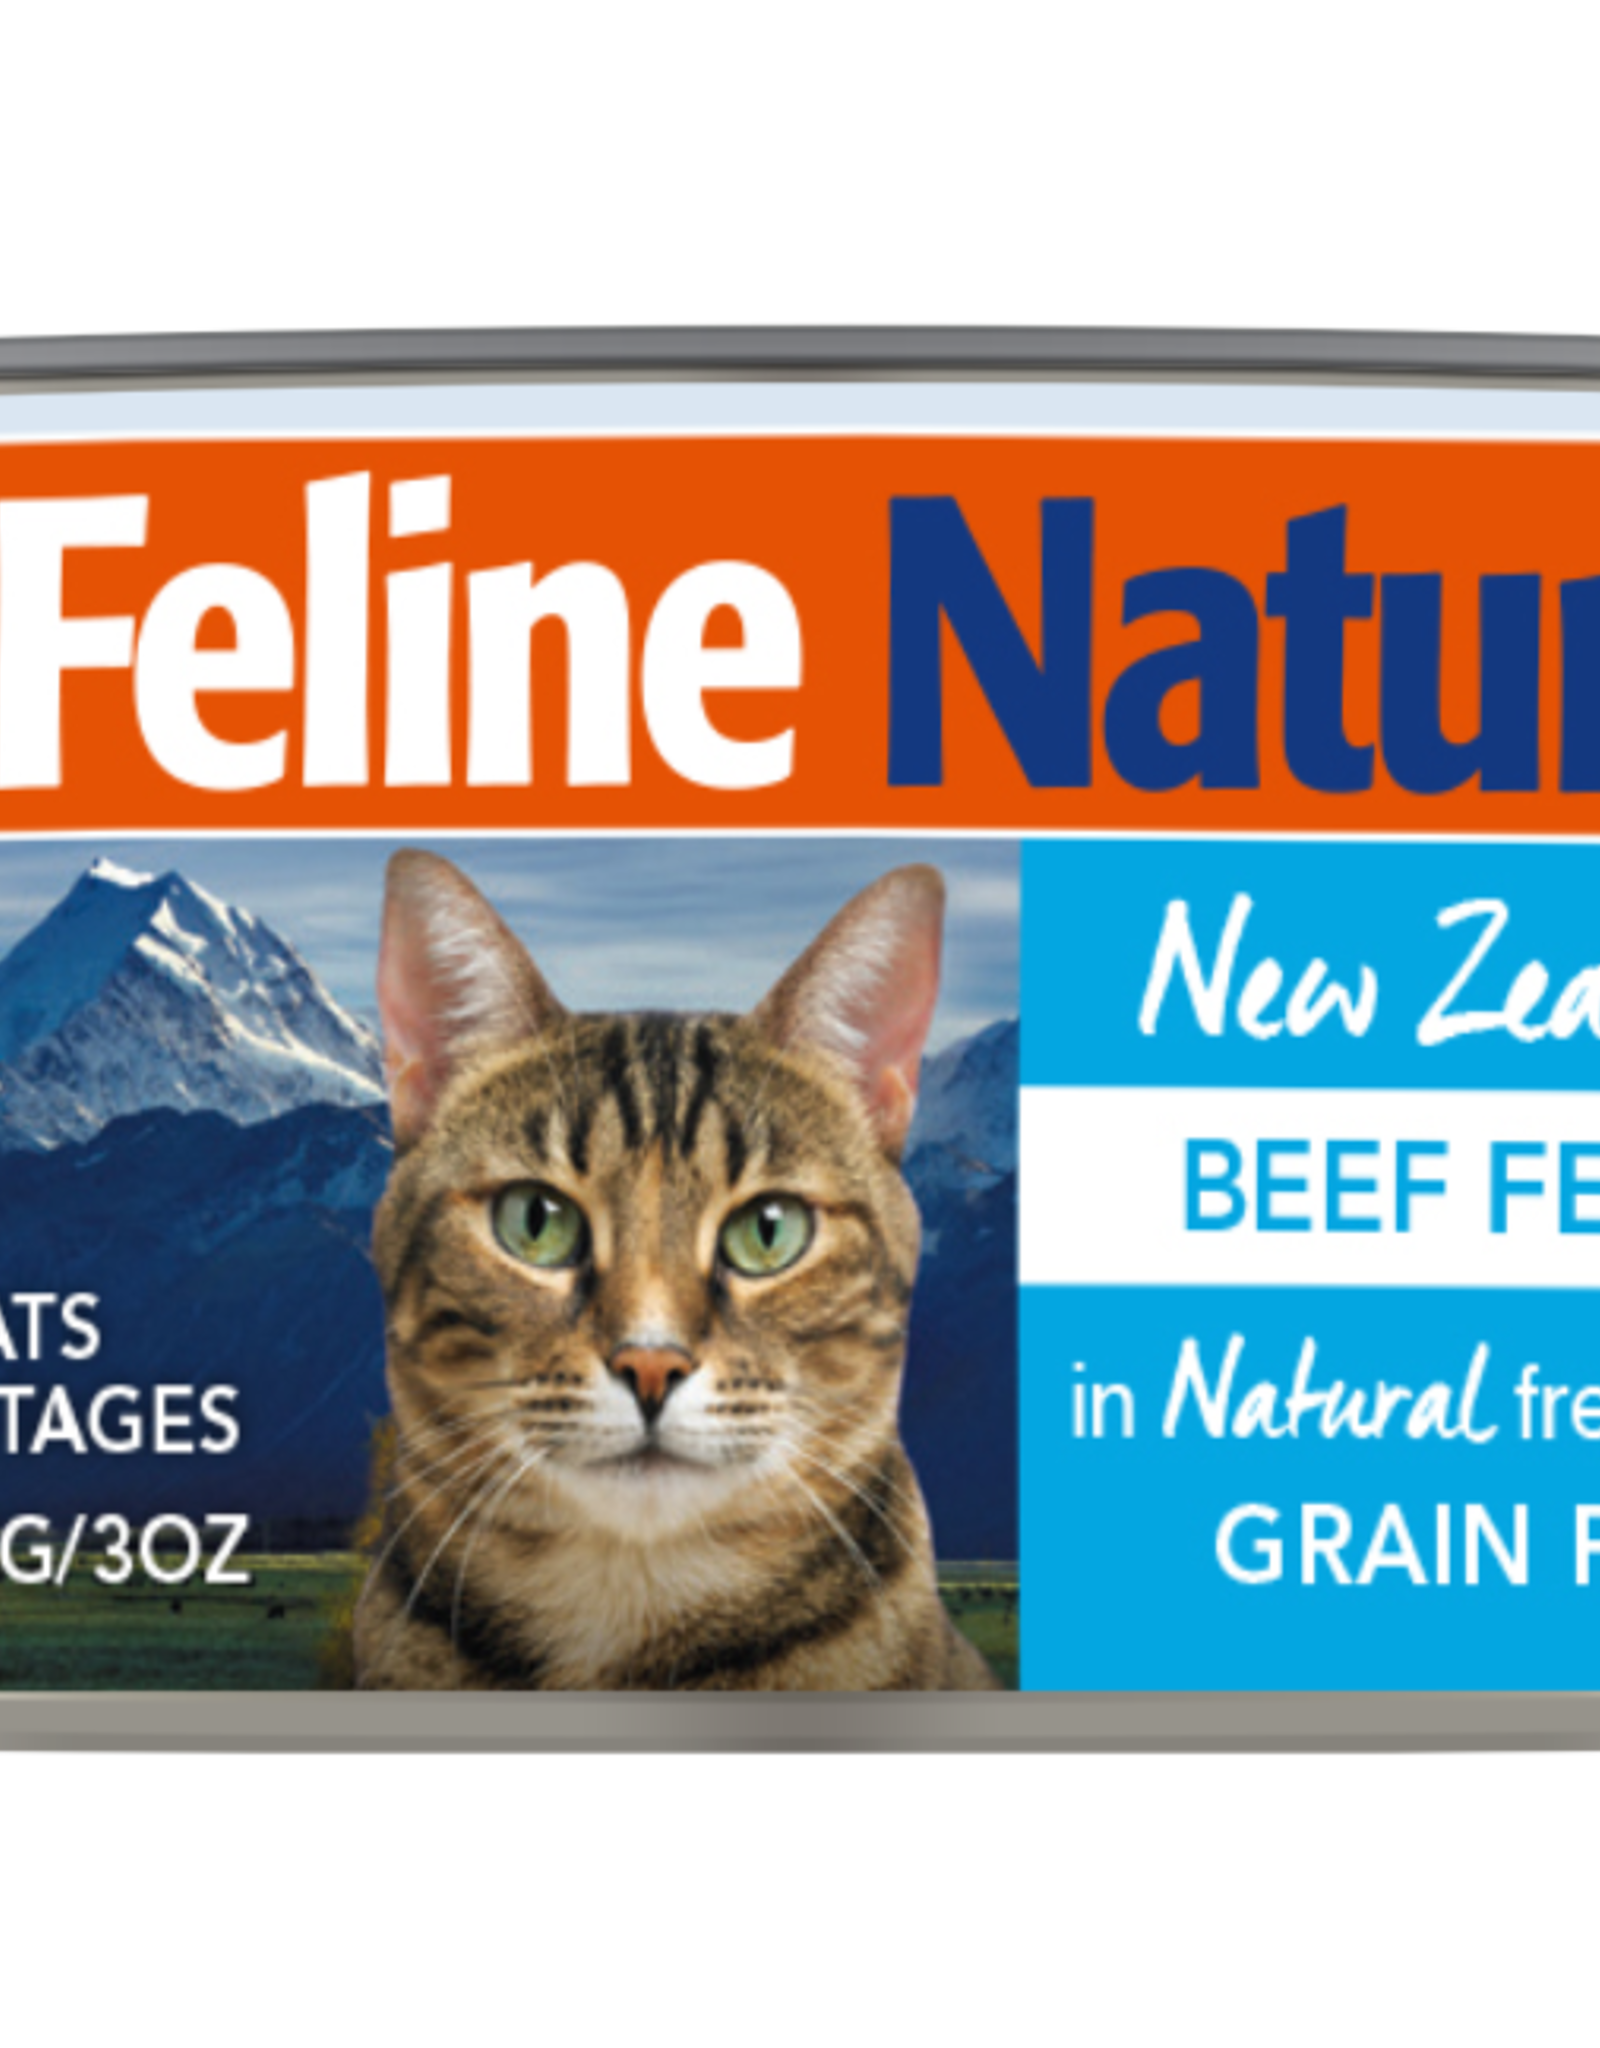 K9 Natural Feline Natural Beef Cans